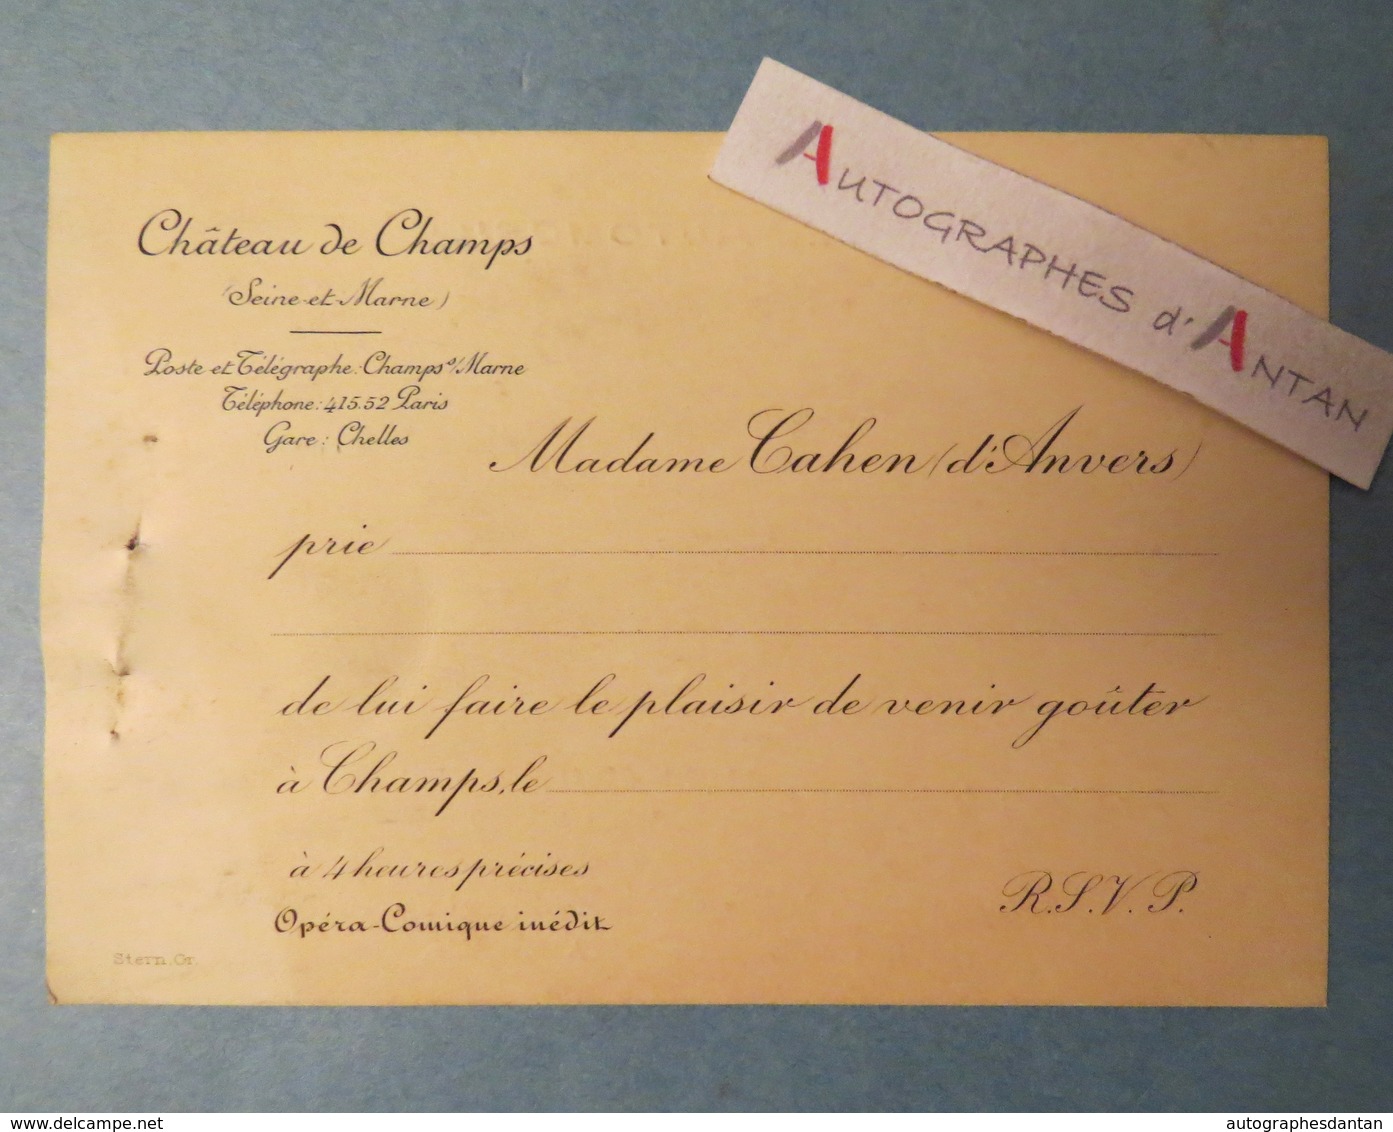 Château De Champs Mme Cahen D'Anvers Carton Invitation Opéra Comique Plan Route Automobile Noisy Le Grand Gare Chelles - Documentos Históricos